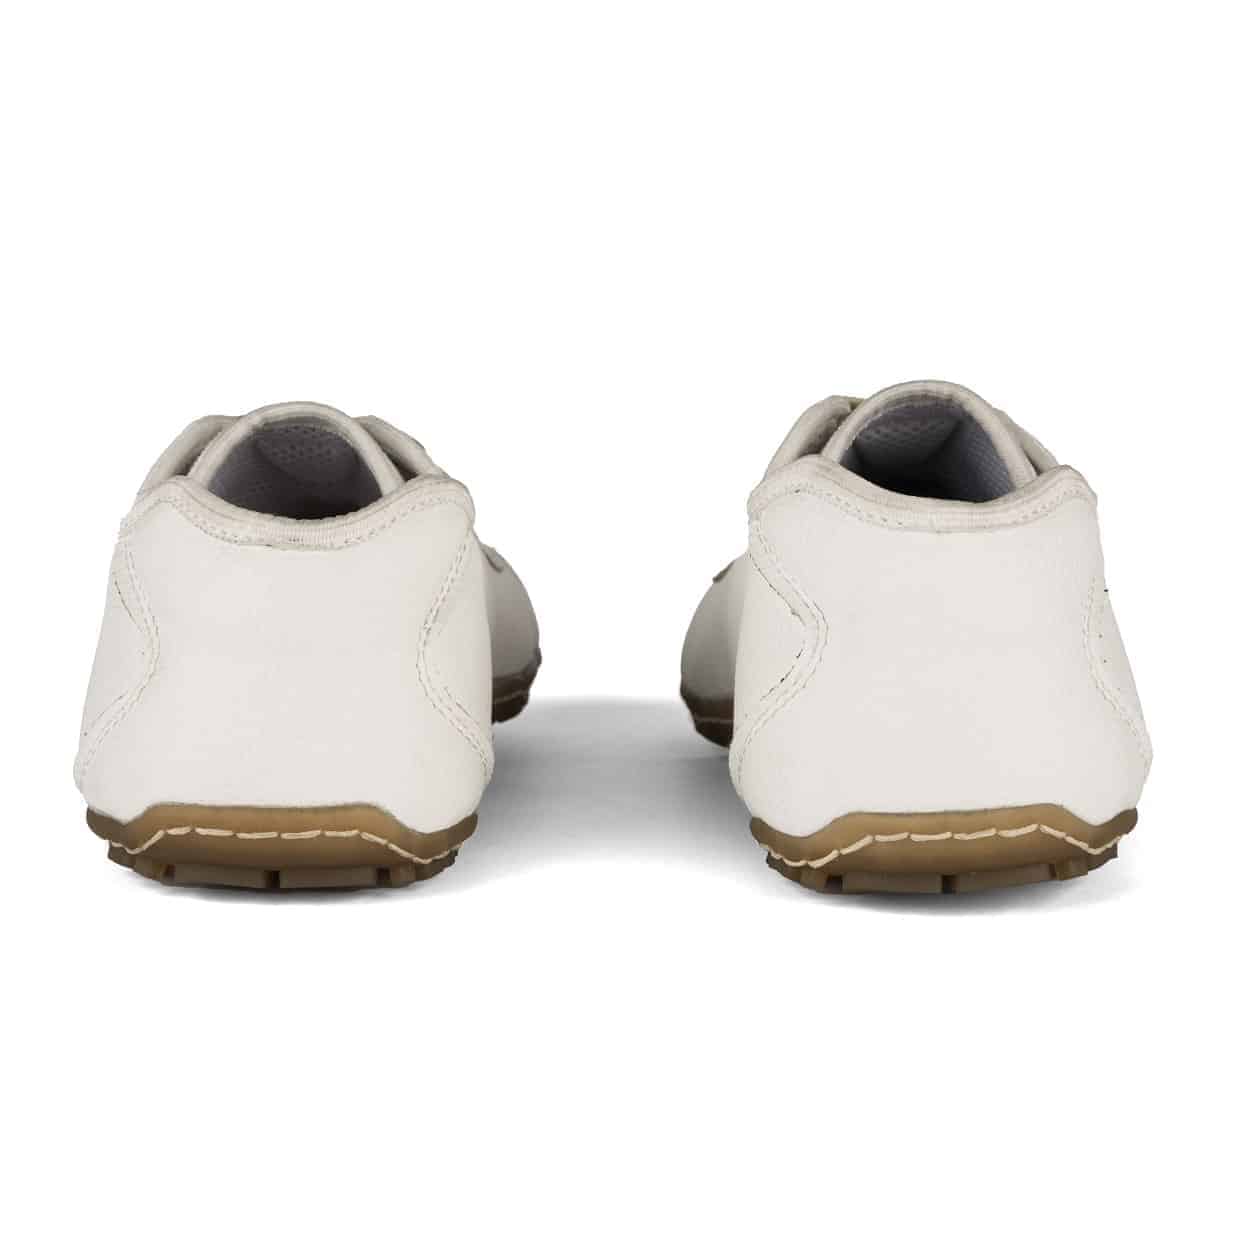 Cuáles son las mejores marcas de calzado minimalista? - Deditos Barefoot